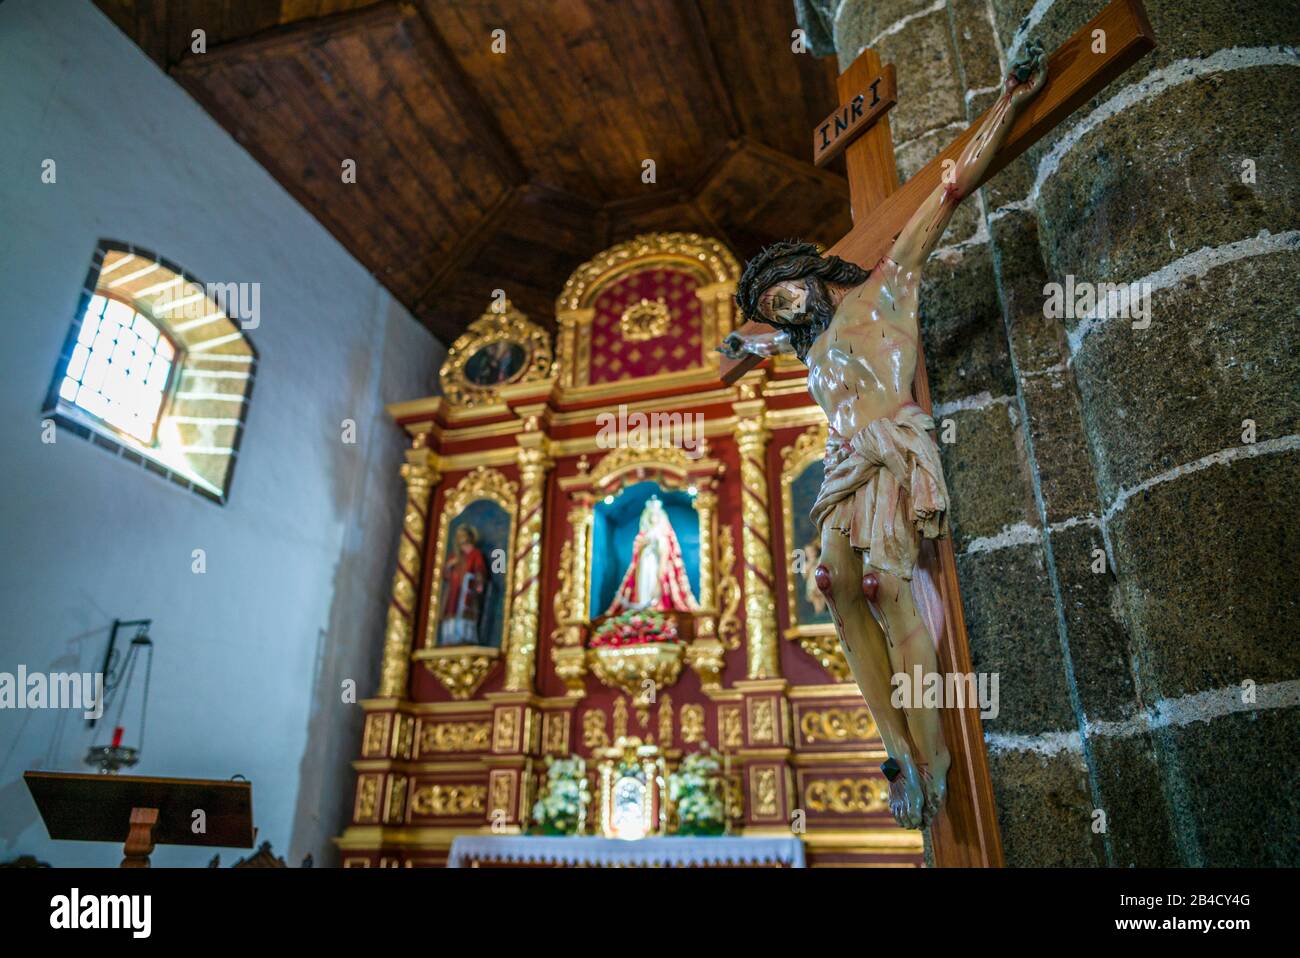 Spain, Canary Islands, El Hierro Island, La Frontera, Iglesia de Nuestra Senora de la Candelaria church, interior with statue of Jesus Christ Stock Photo